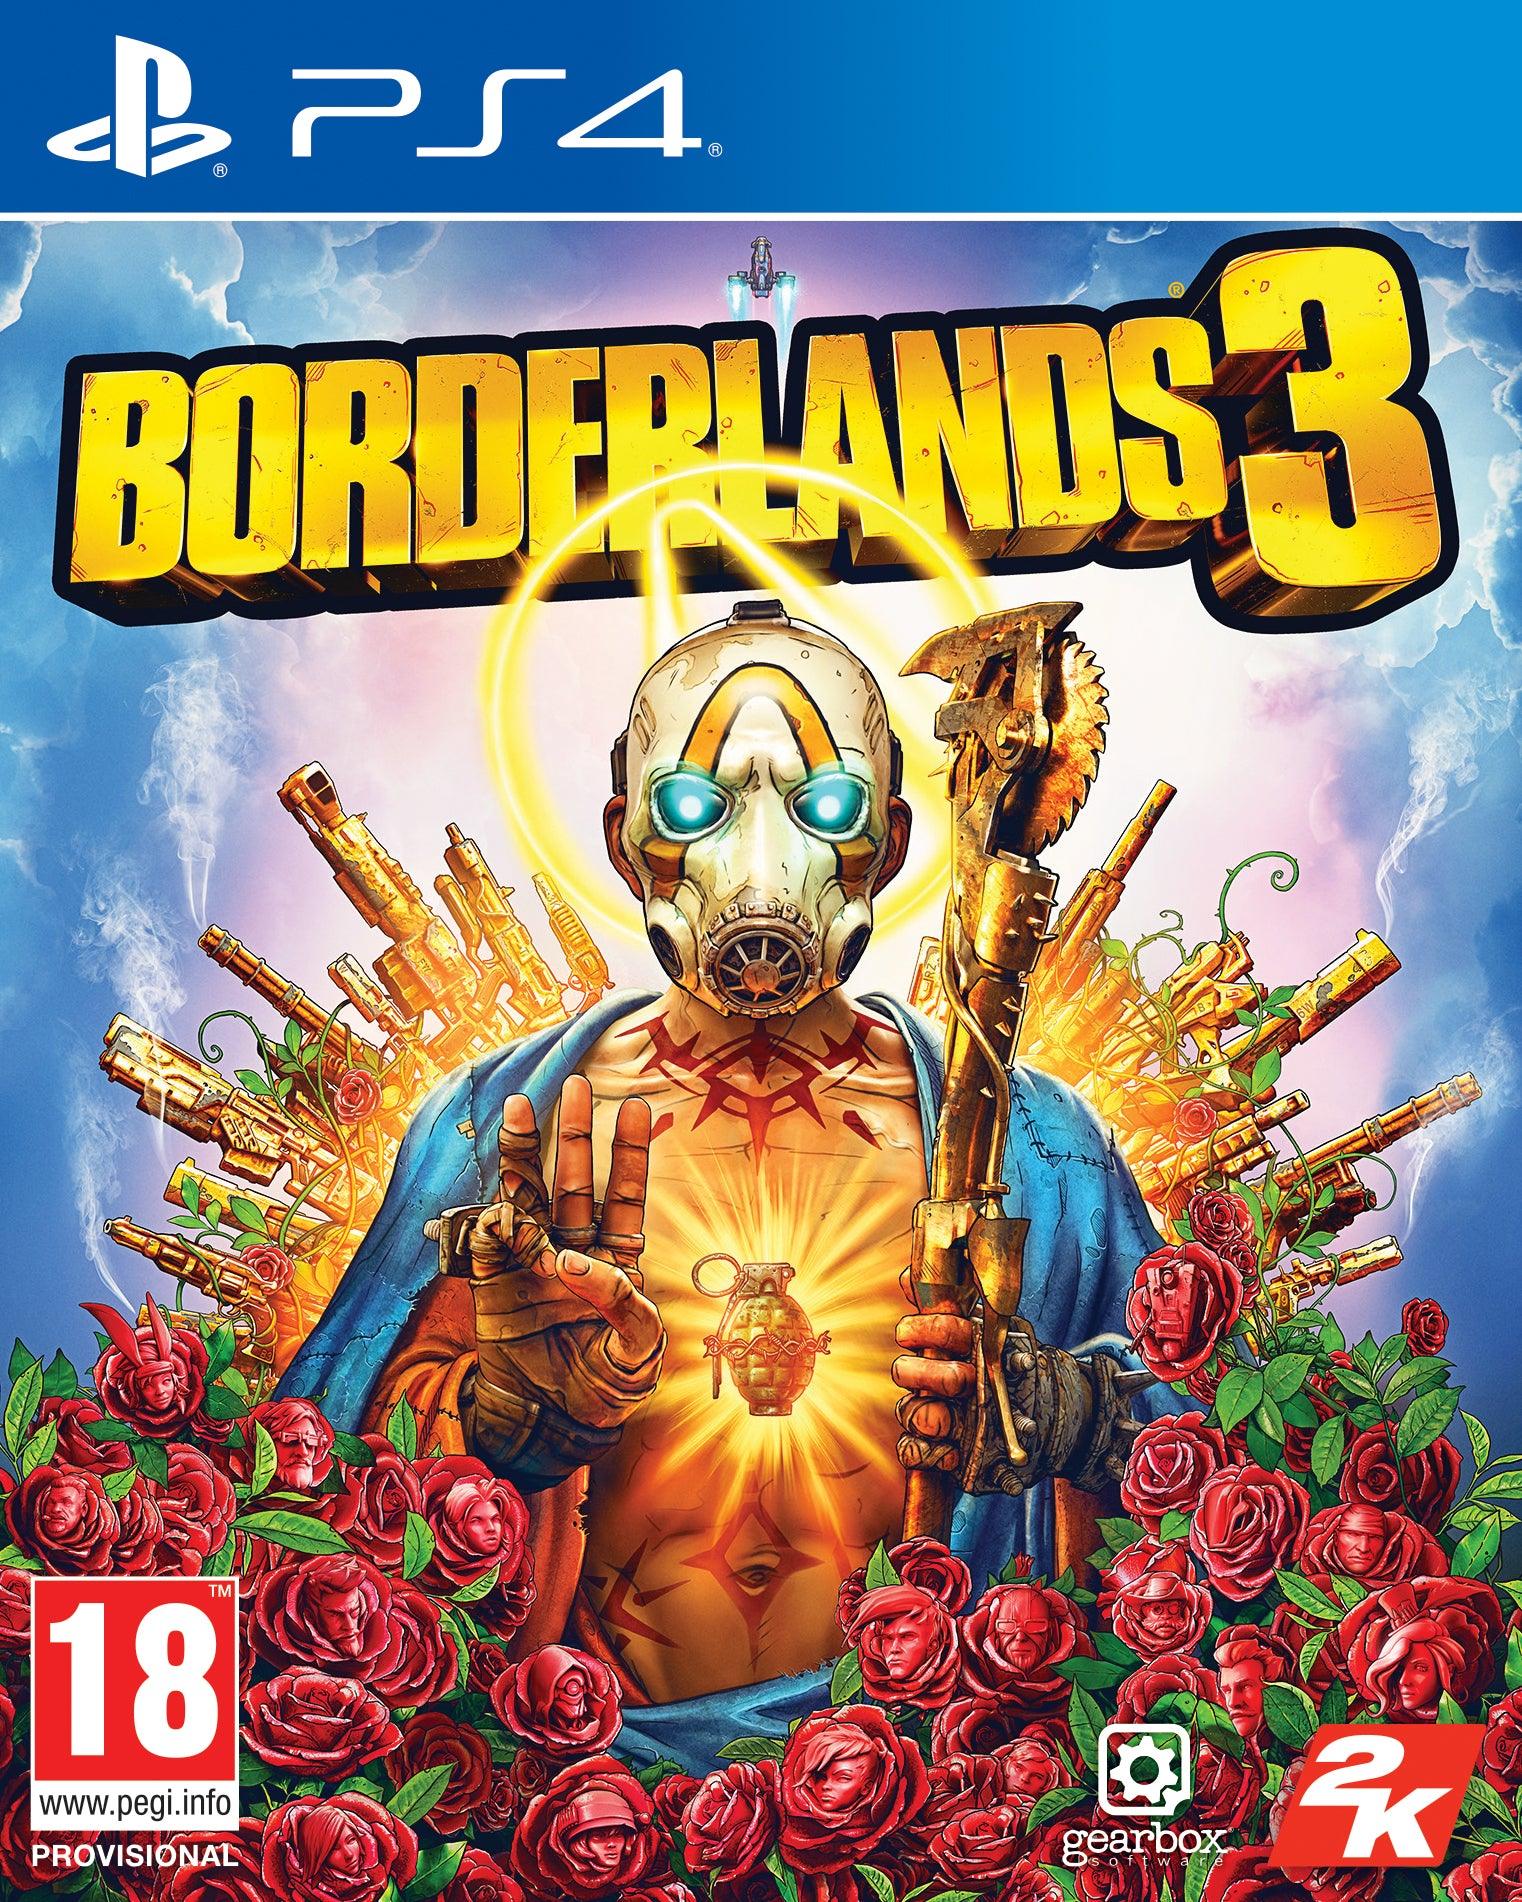 Borderlands 3 - Want a New Gadget